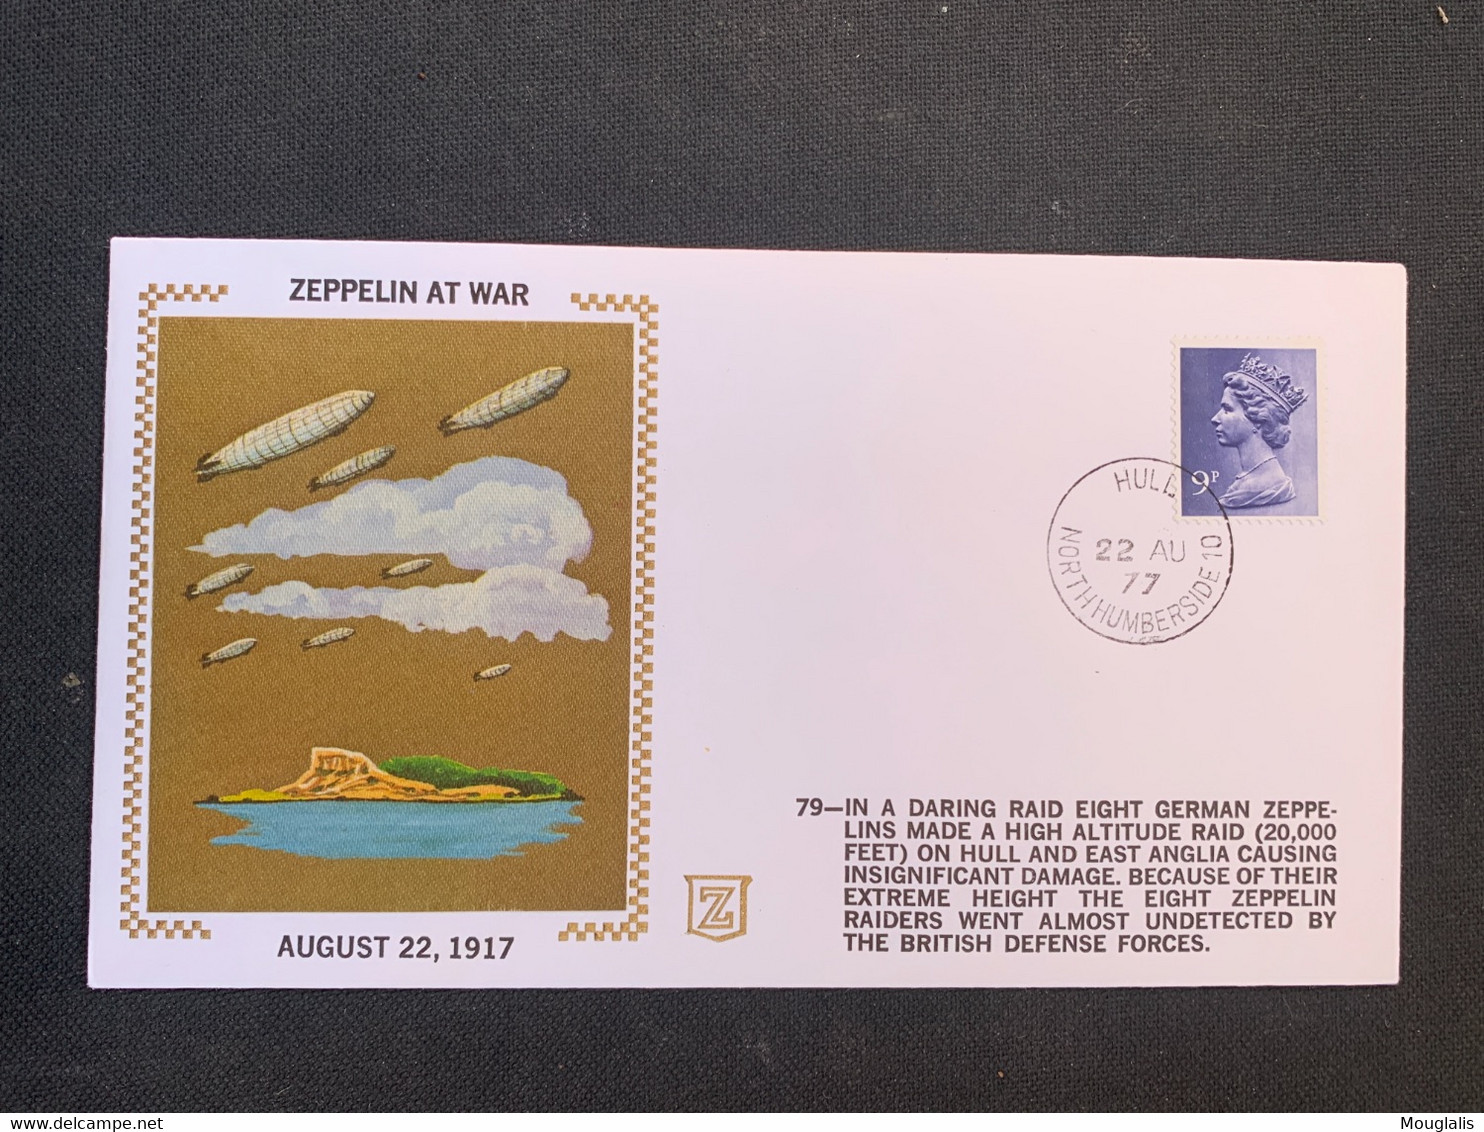 très beau lot collection Zeppelin 22 enveloppes aviation ttes différentes photos individuelles à voir dans «images» Rare